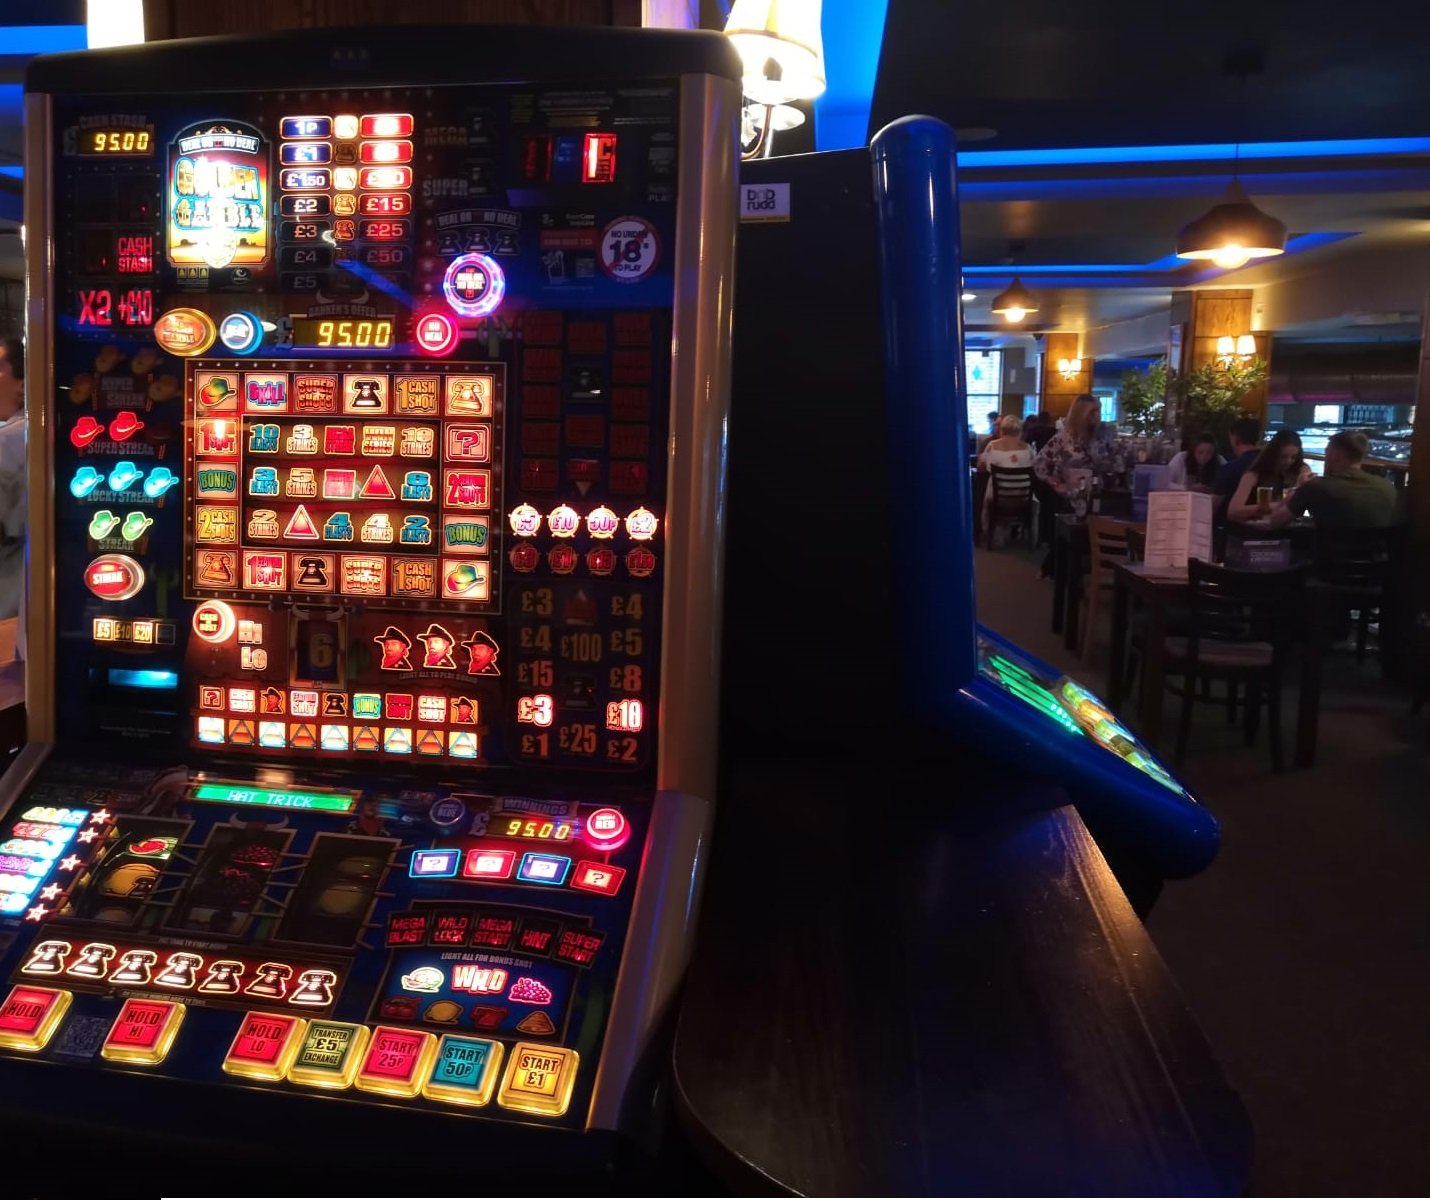 Spielautomaten im Pub Restaurant|Spielautomat in Pub Restaurant